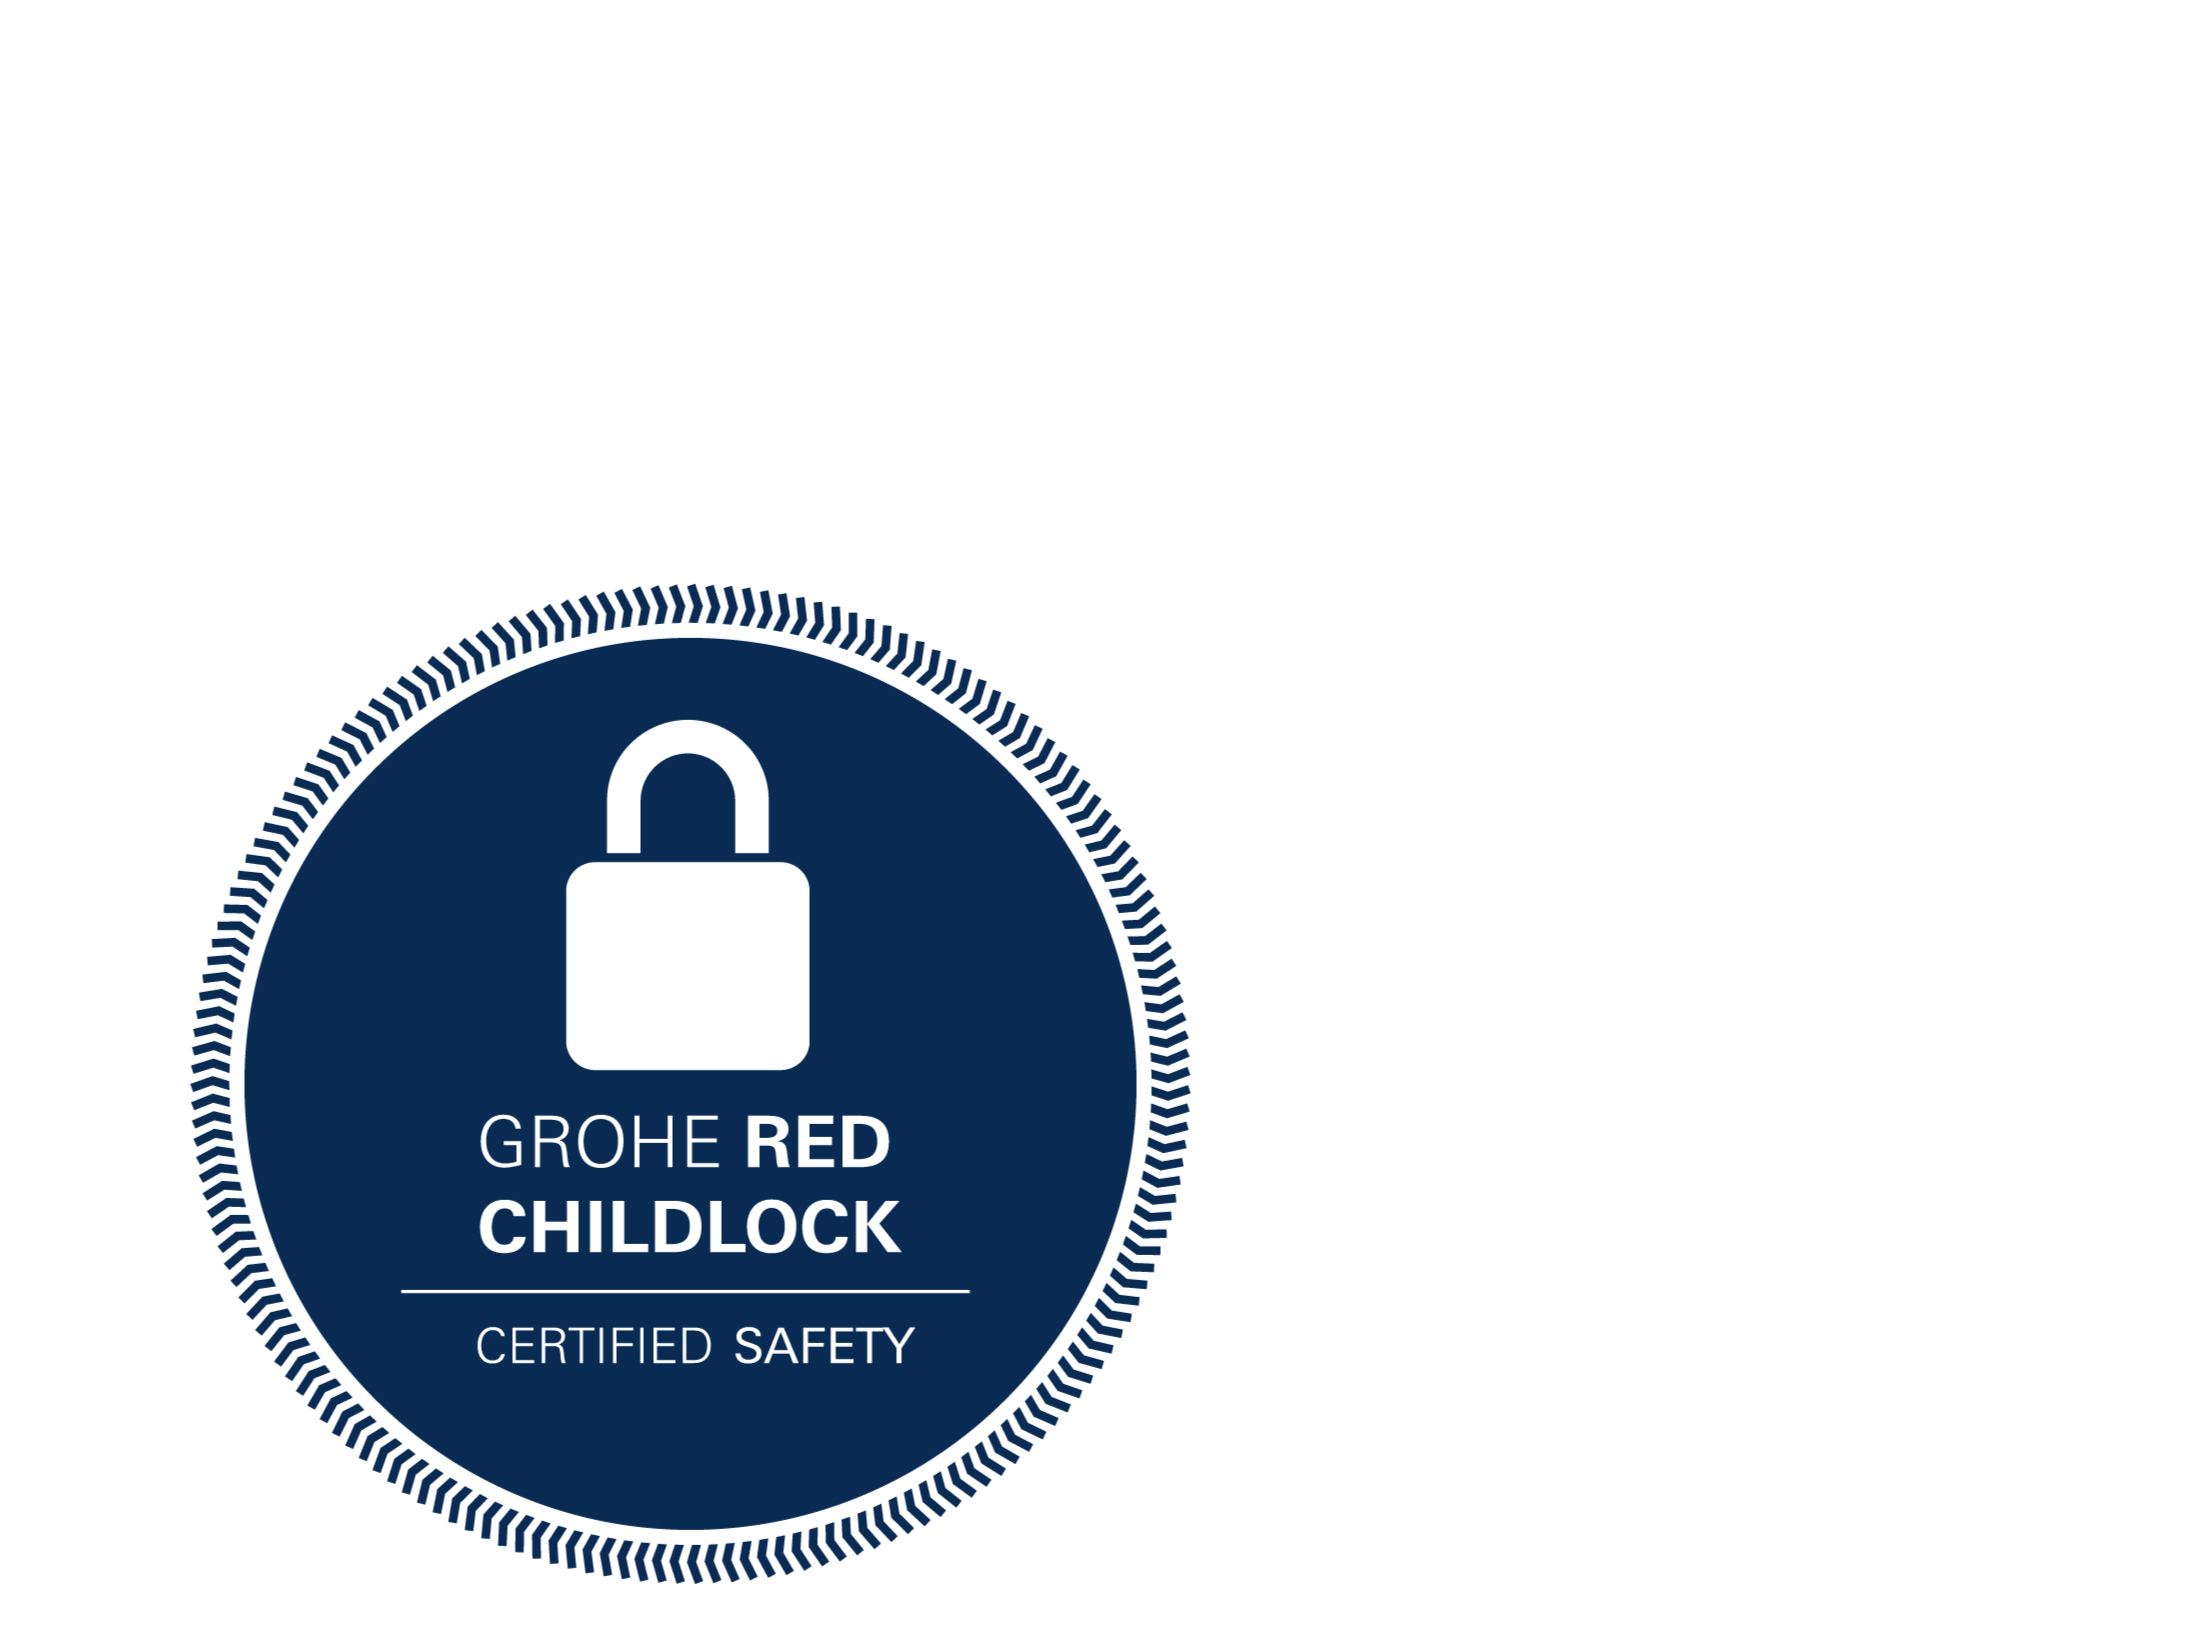 GROHE Childlock